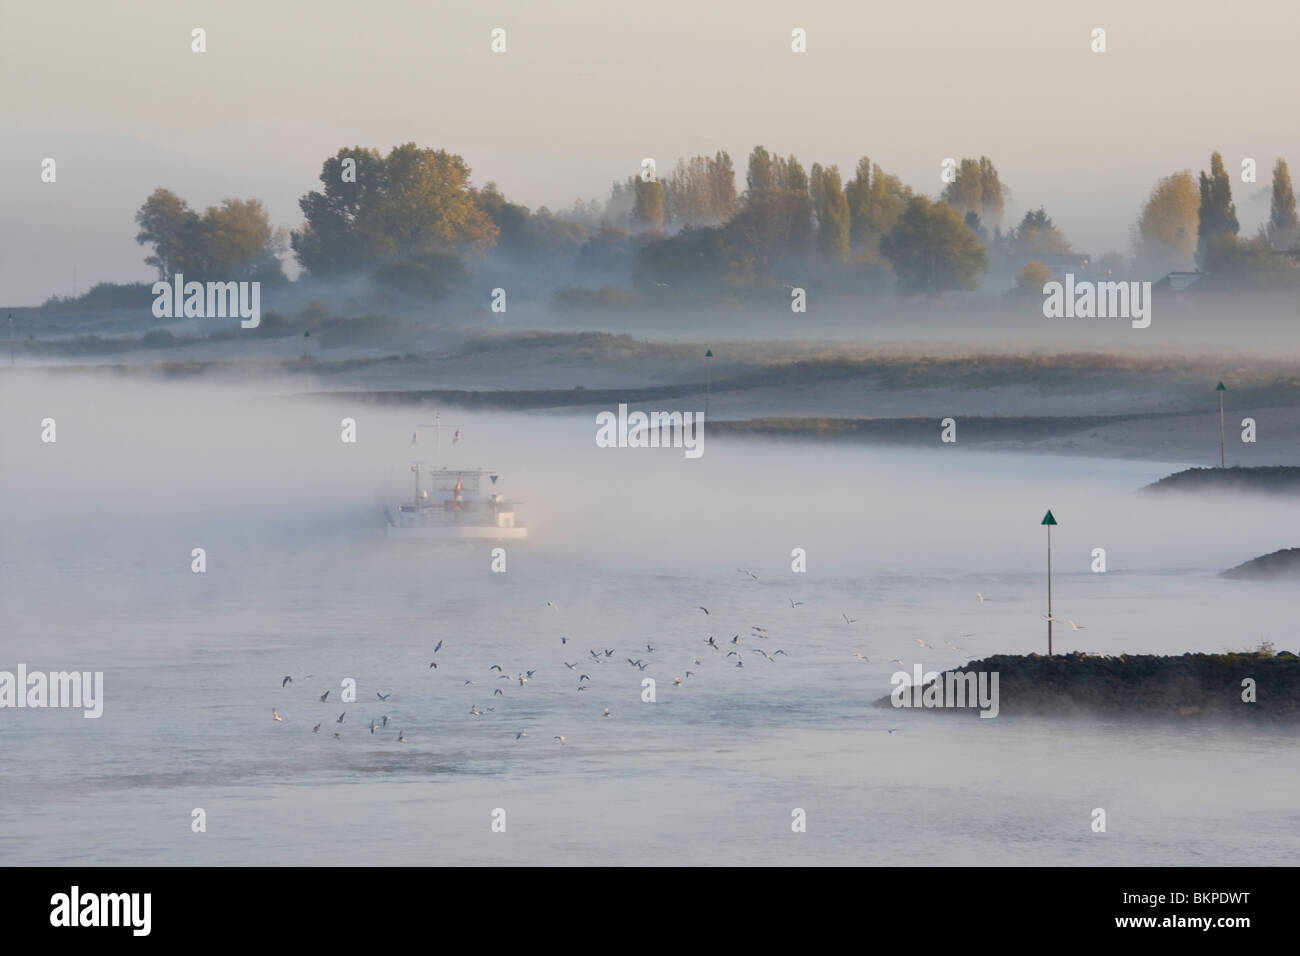 Sfeervolle mistige vroege morgen aan de Waal bij Nijmegen met rijnaak en kribben in de rivier, Scenic eary morning at the Waal with fog, a boat and groynes Stock Photo